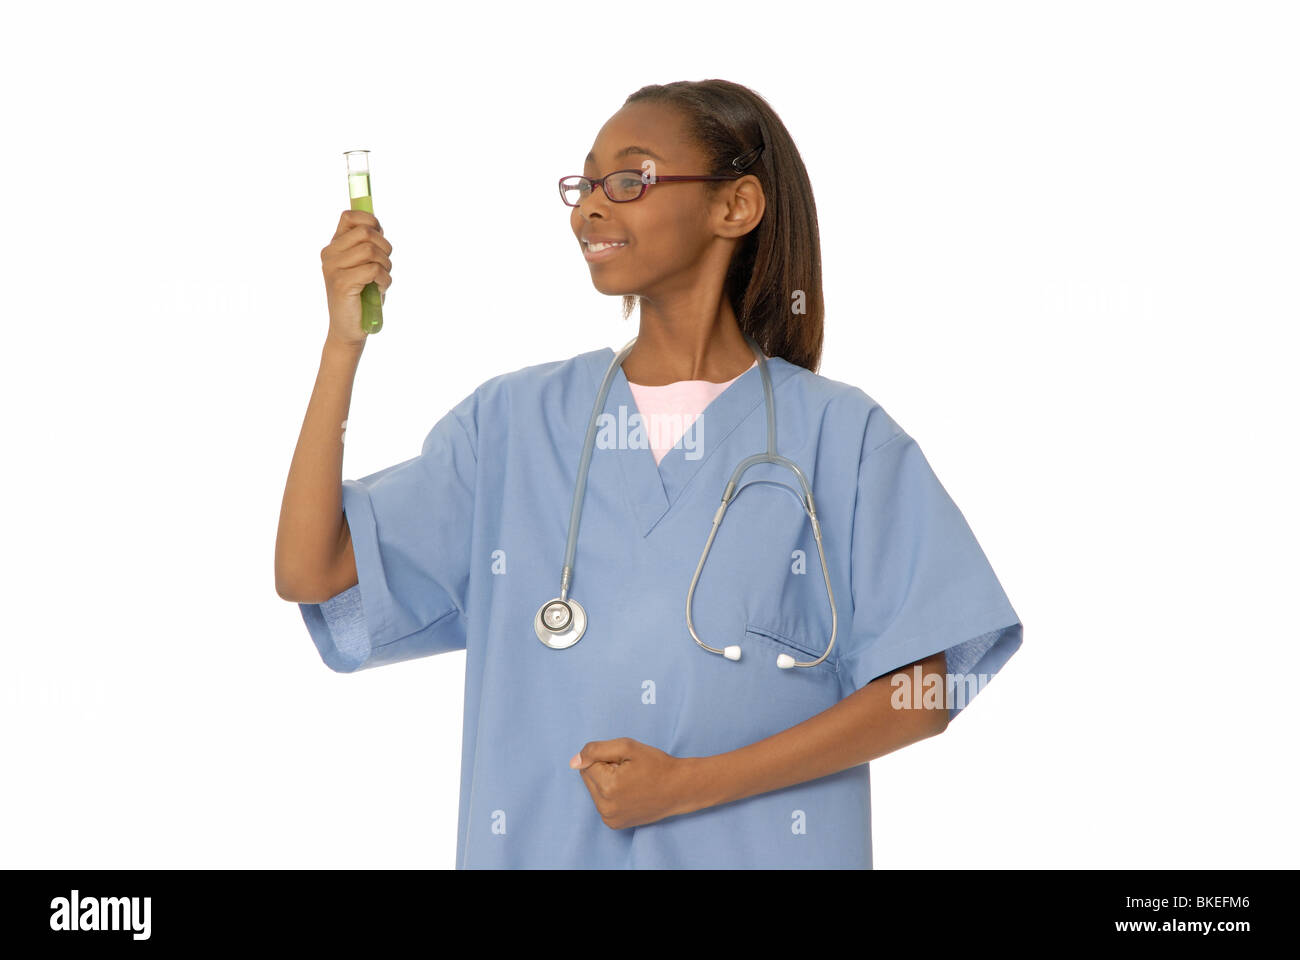 Dieci anni di ragazza vestita come un medico, con un tubo di prova o becher. Foto Stock